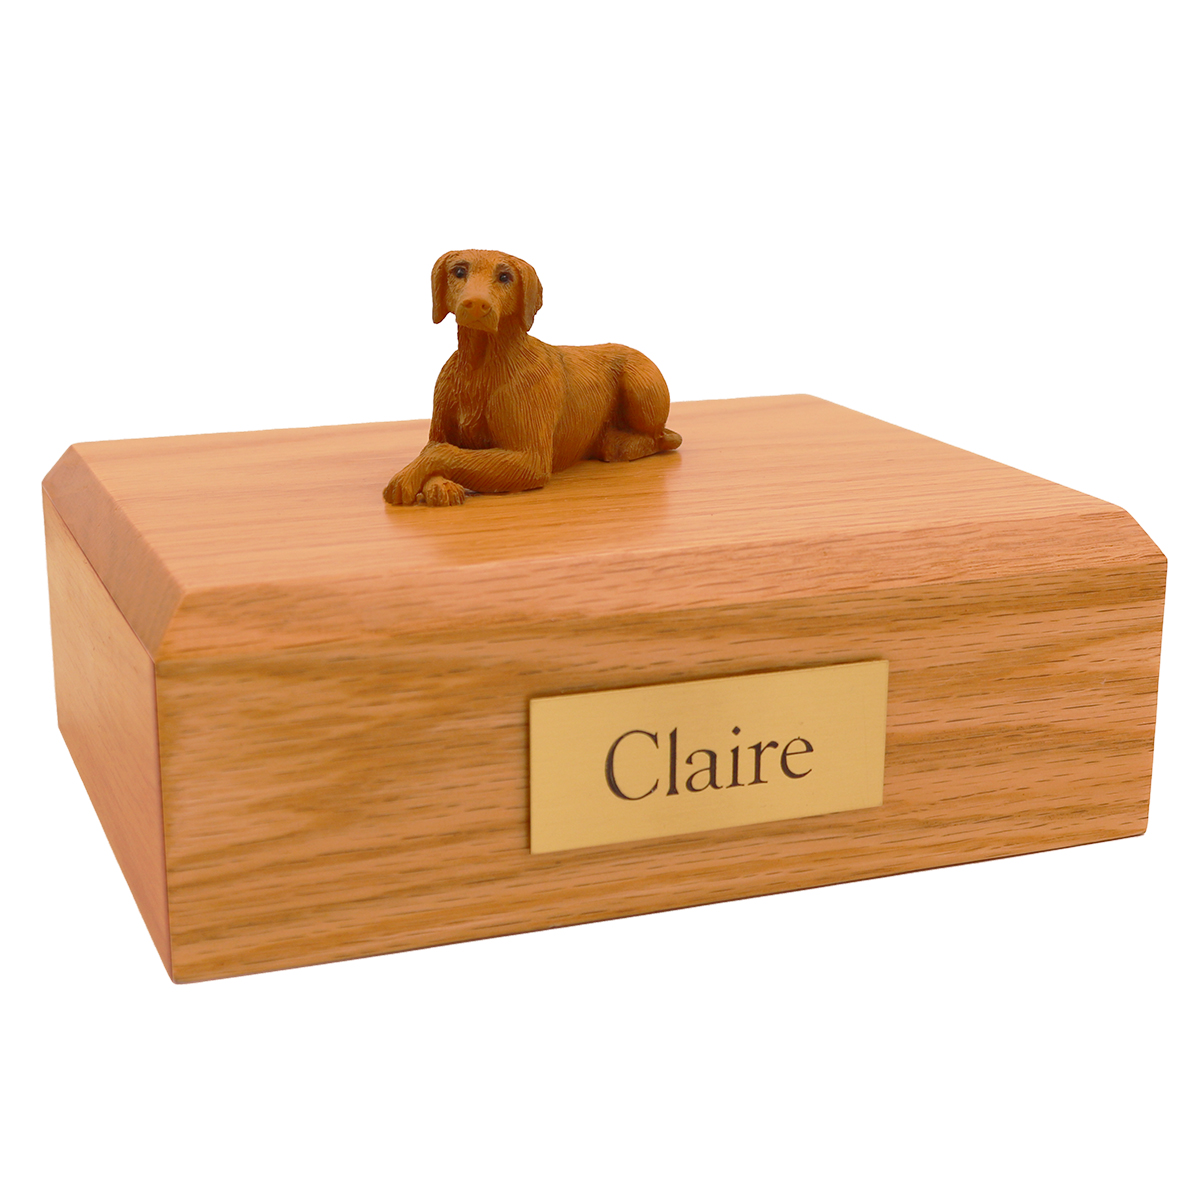 Dog, Vizsla - Figurine Urn